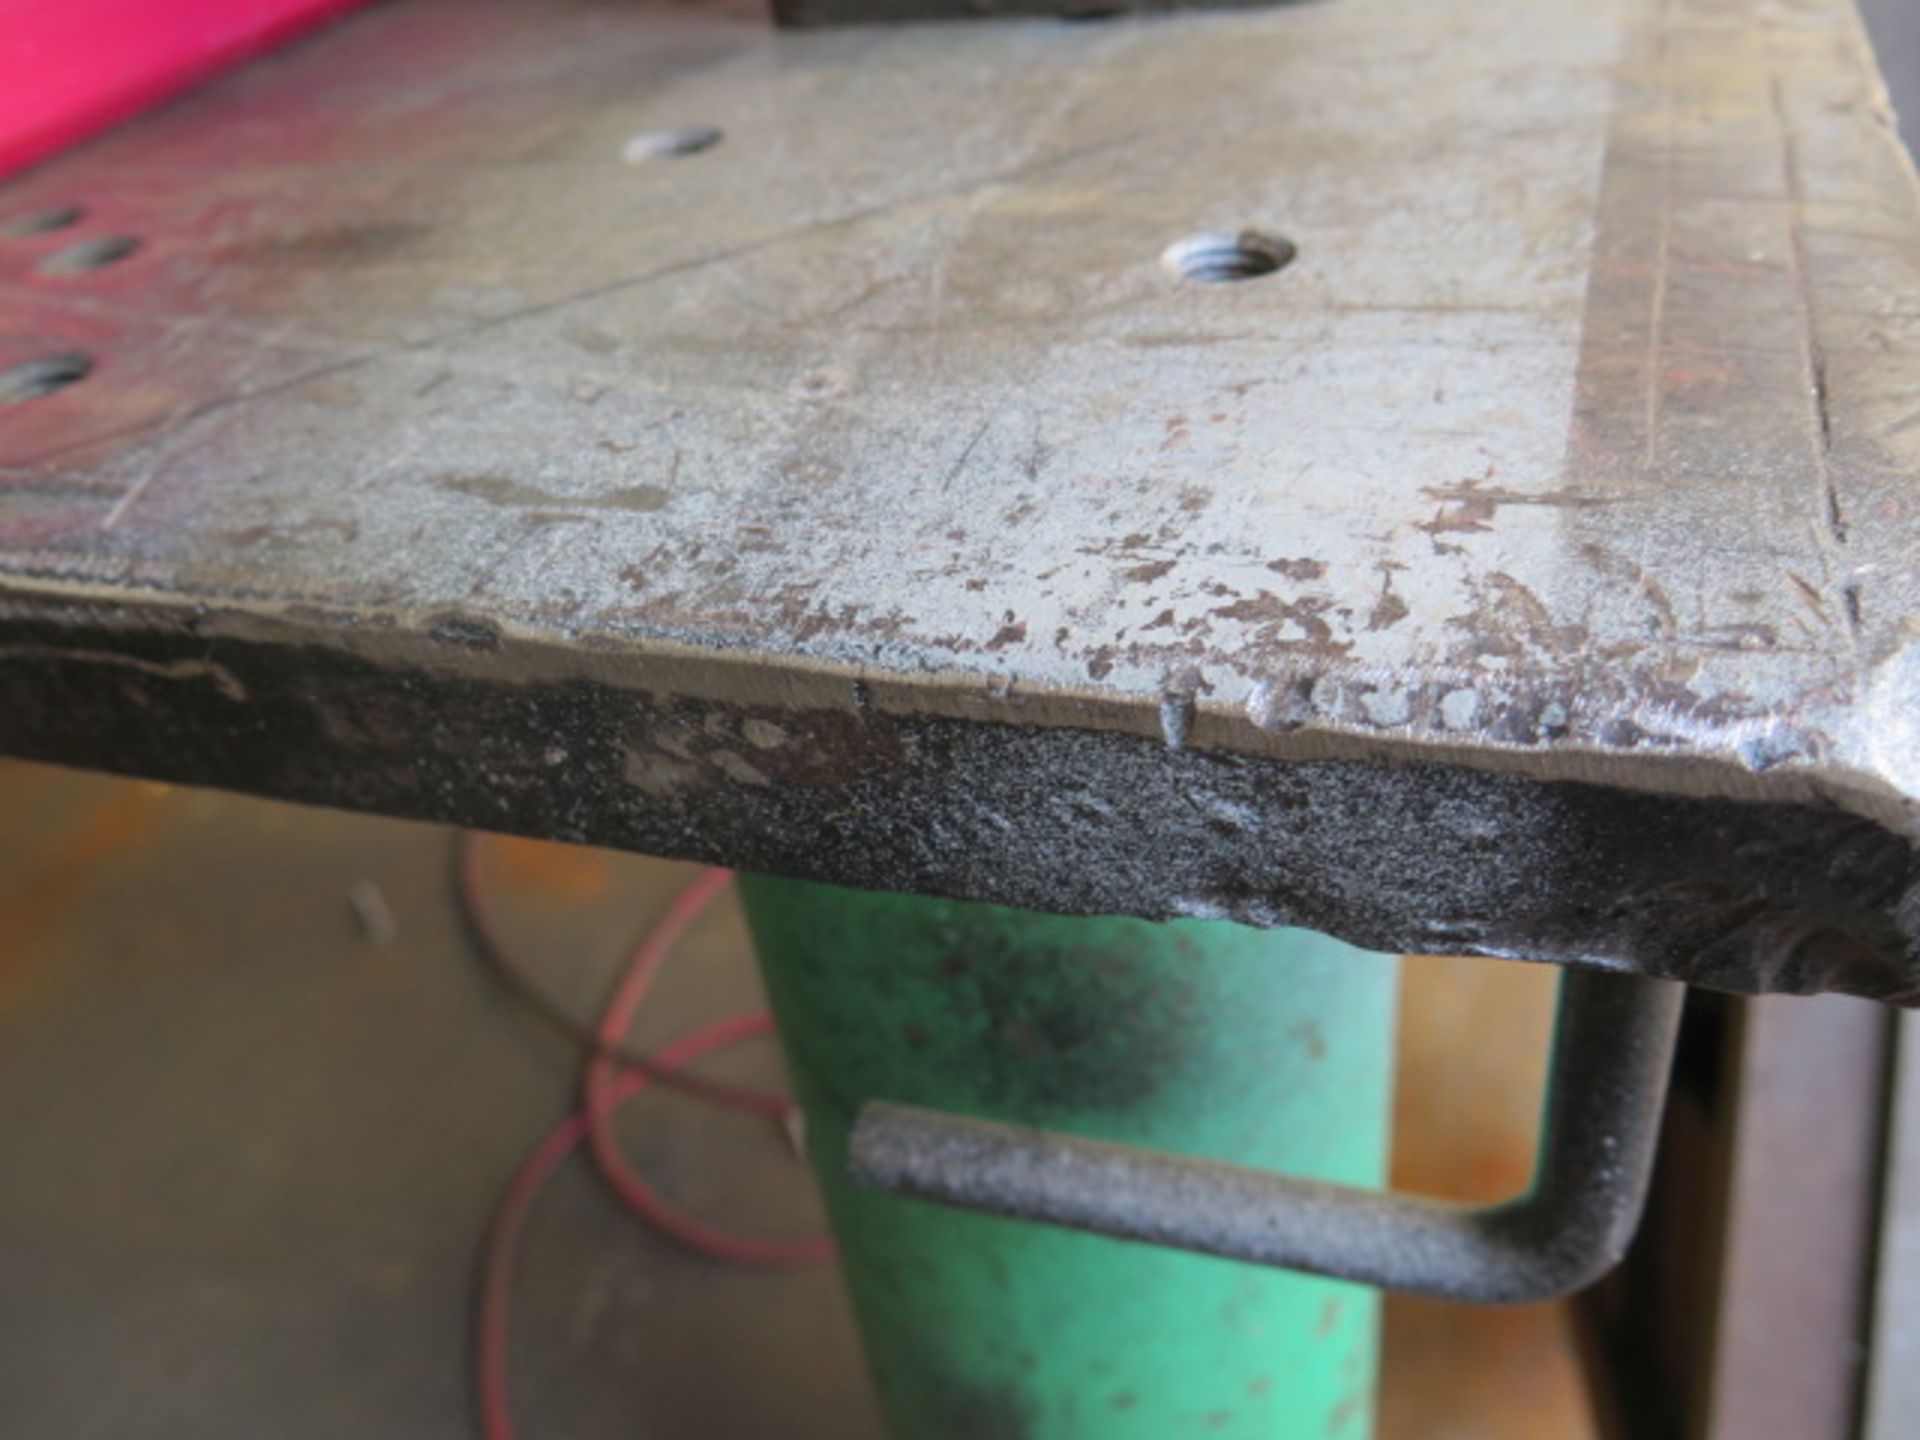 36" x 48" x 1" Steel Welding Table w/ Work Light (SOLD AS-IS - NO WARRANTY) - Image 3 of 4